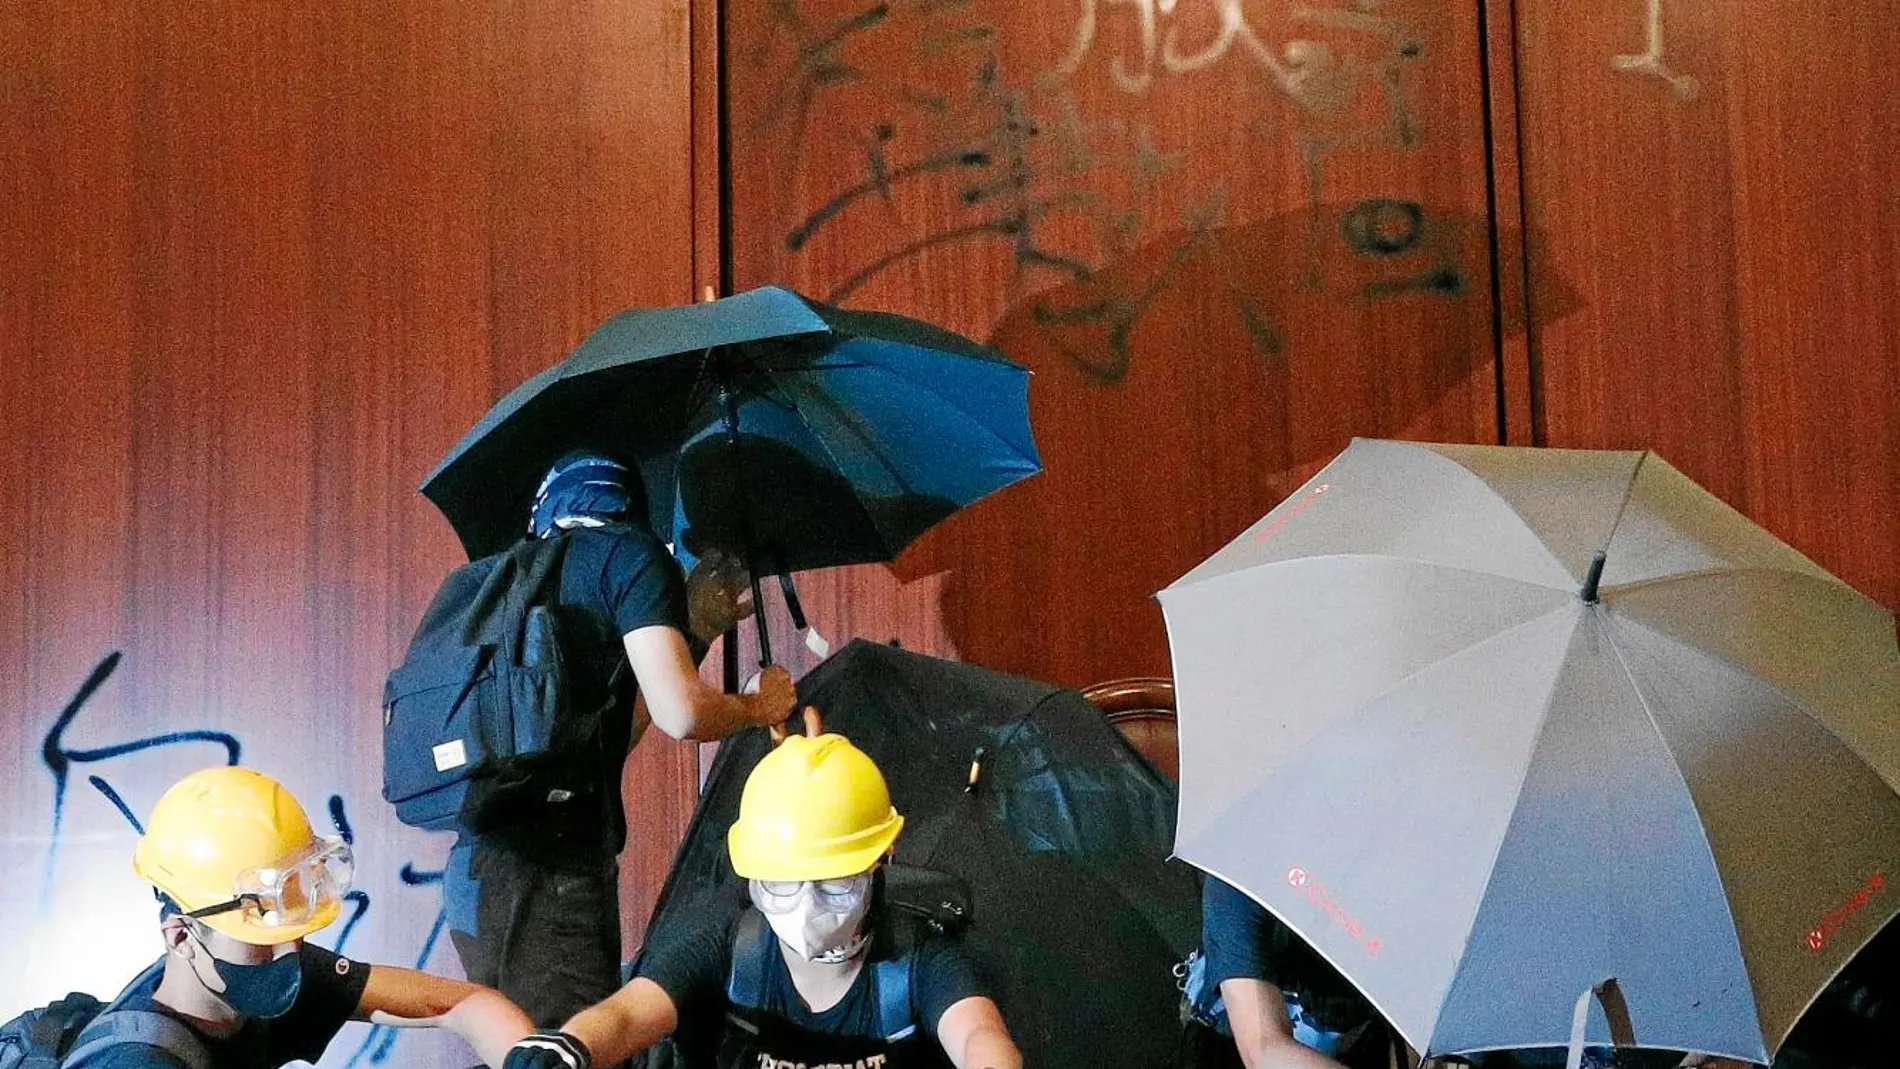 Un grupo de manifestantes coloca una bandera colonial en el Parlamento hongkonés / Ap